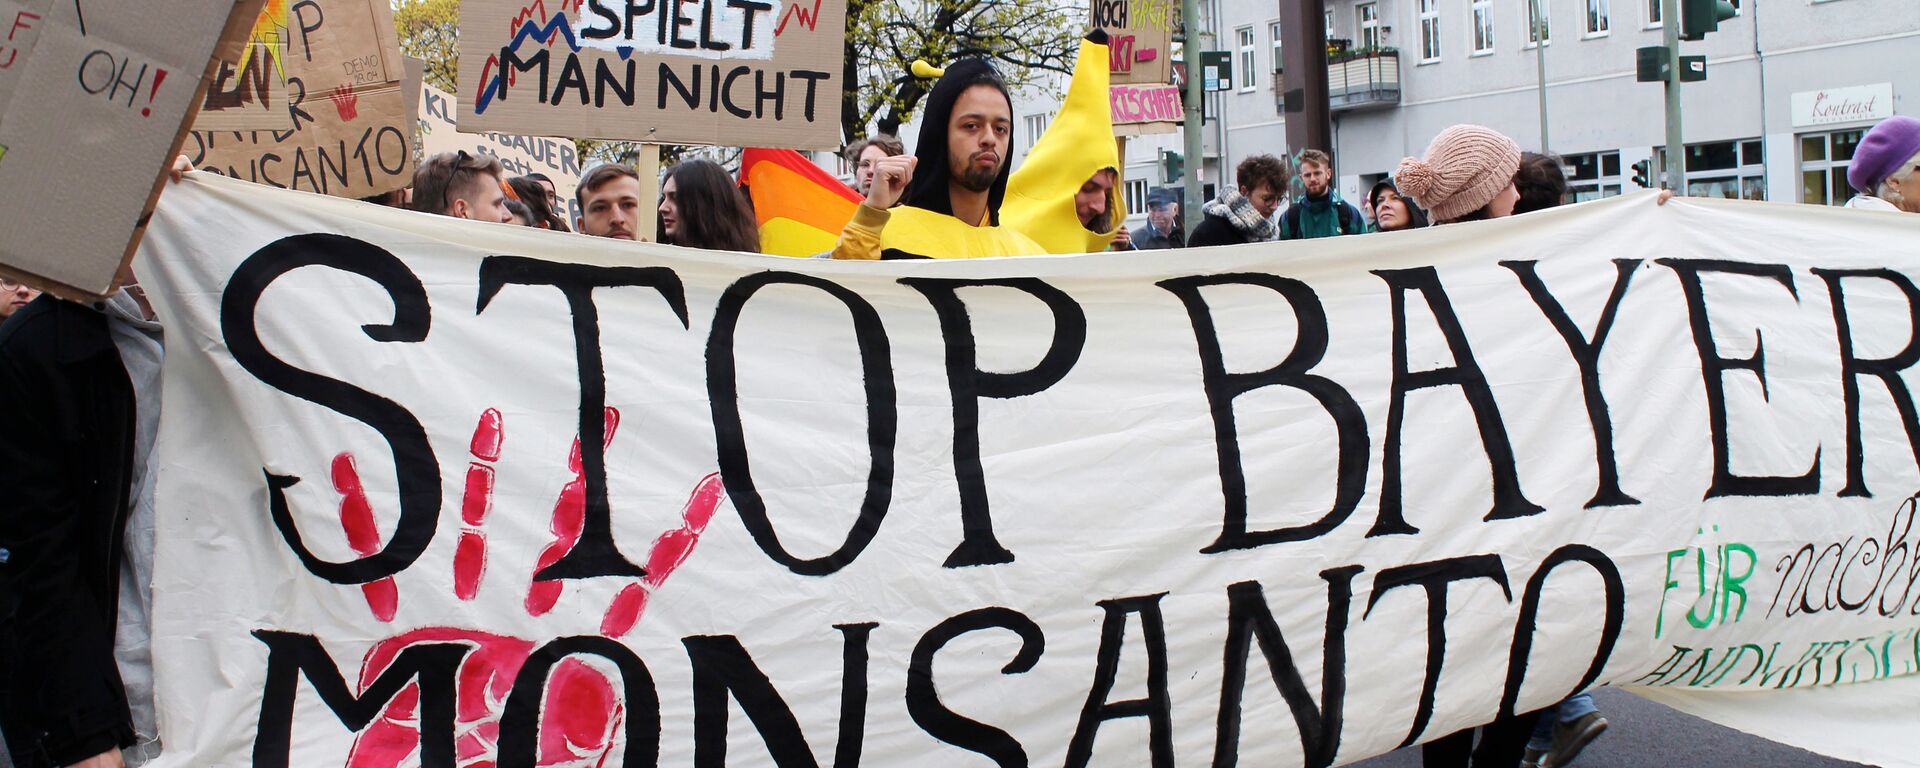 Участники акции в Берлине против американского концерна Monsanto — компании, которая производит трансгенные семена растений. - Sputnik Latvija, 1920, 19.08.2018